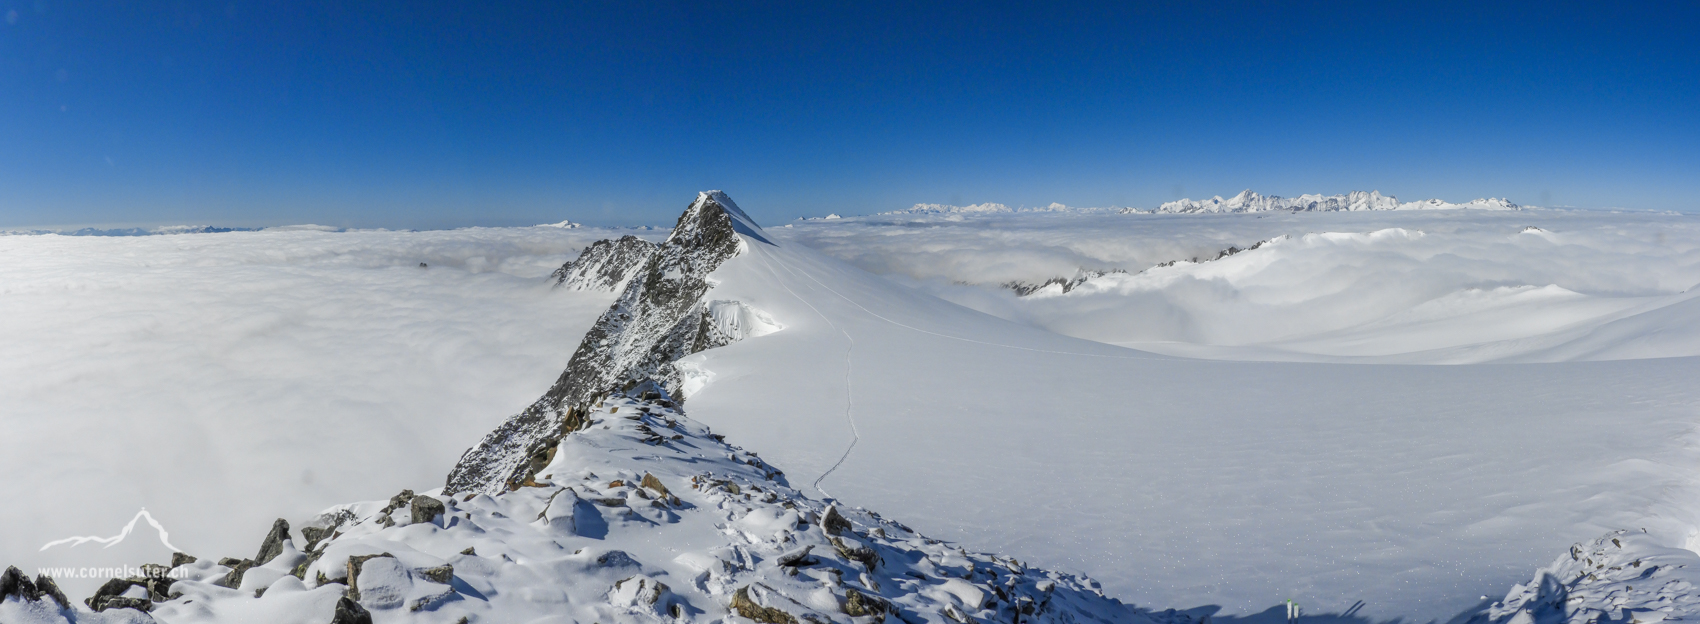 Pano auf dem Schneestock 3608m mit Sicht zum Dammastock 3630m.